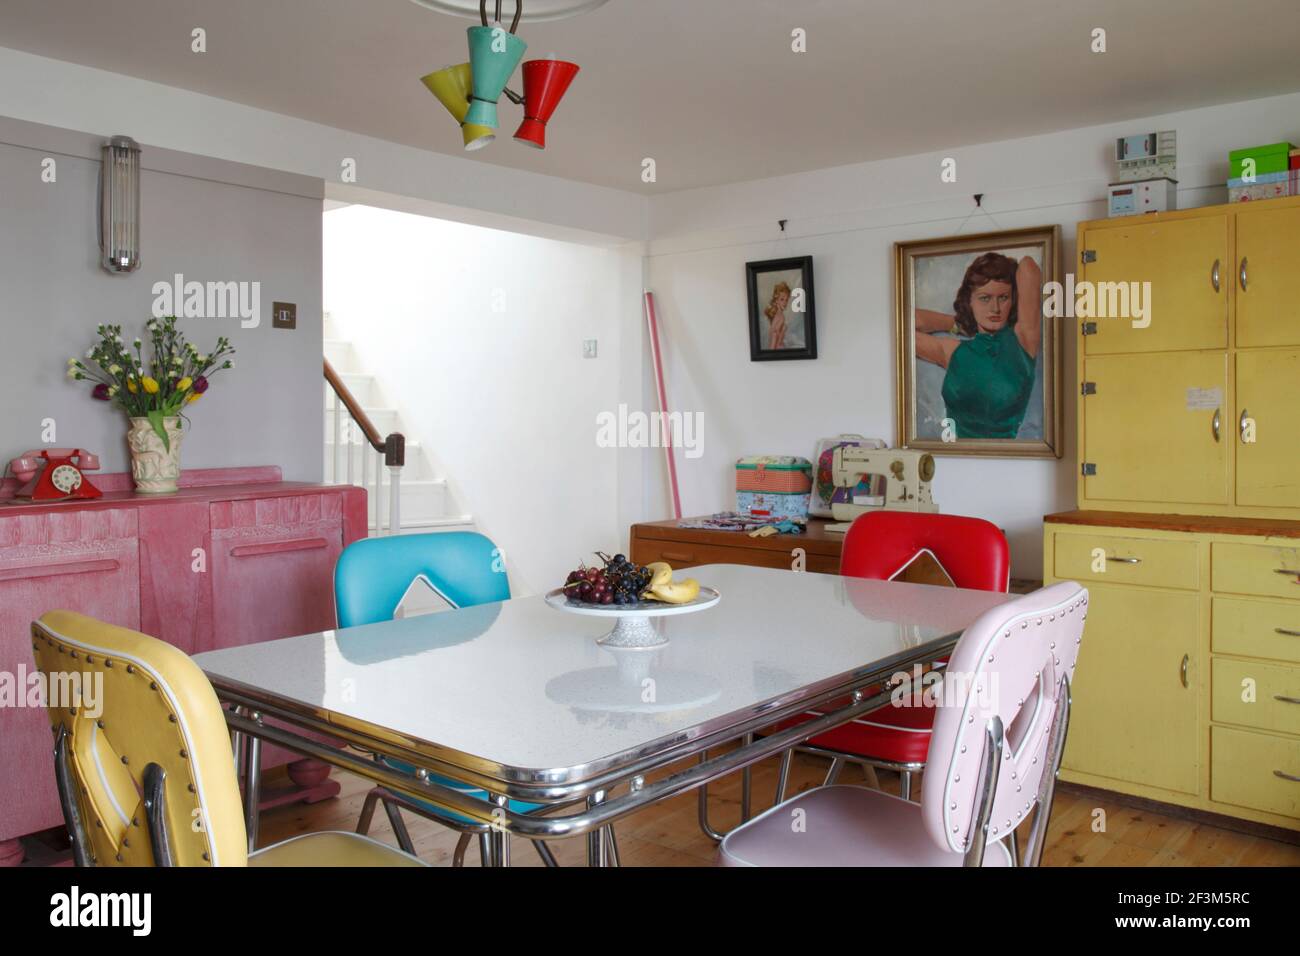 In hellen Farben gehaltene Diner-Möbel im amerikanischen Stil mit pinkem  Art Deco Sideboard & utilitaristisch gelb lackiert Küchenschrank  Stockfotografie - Alamy